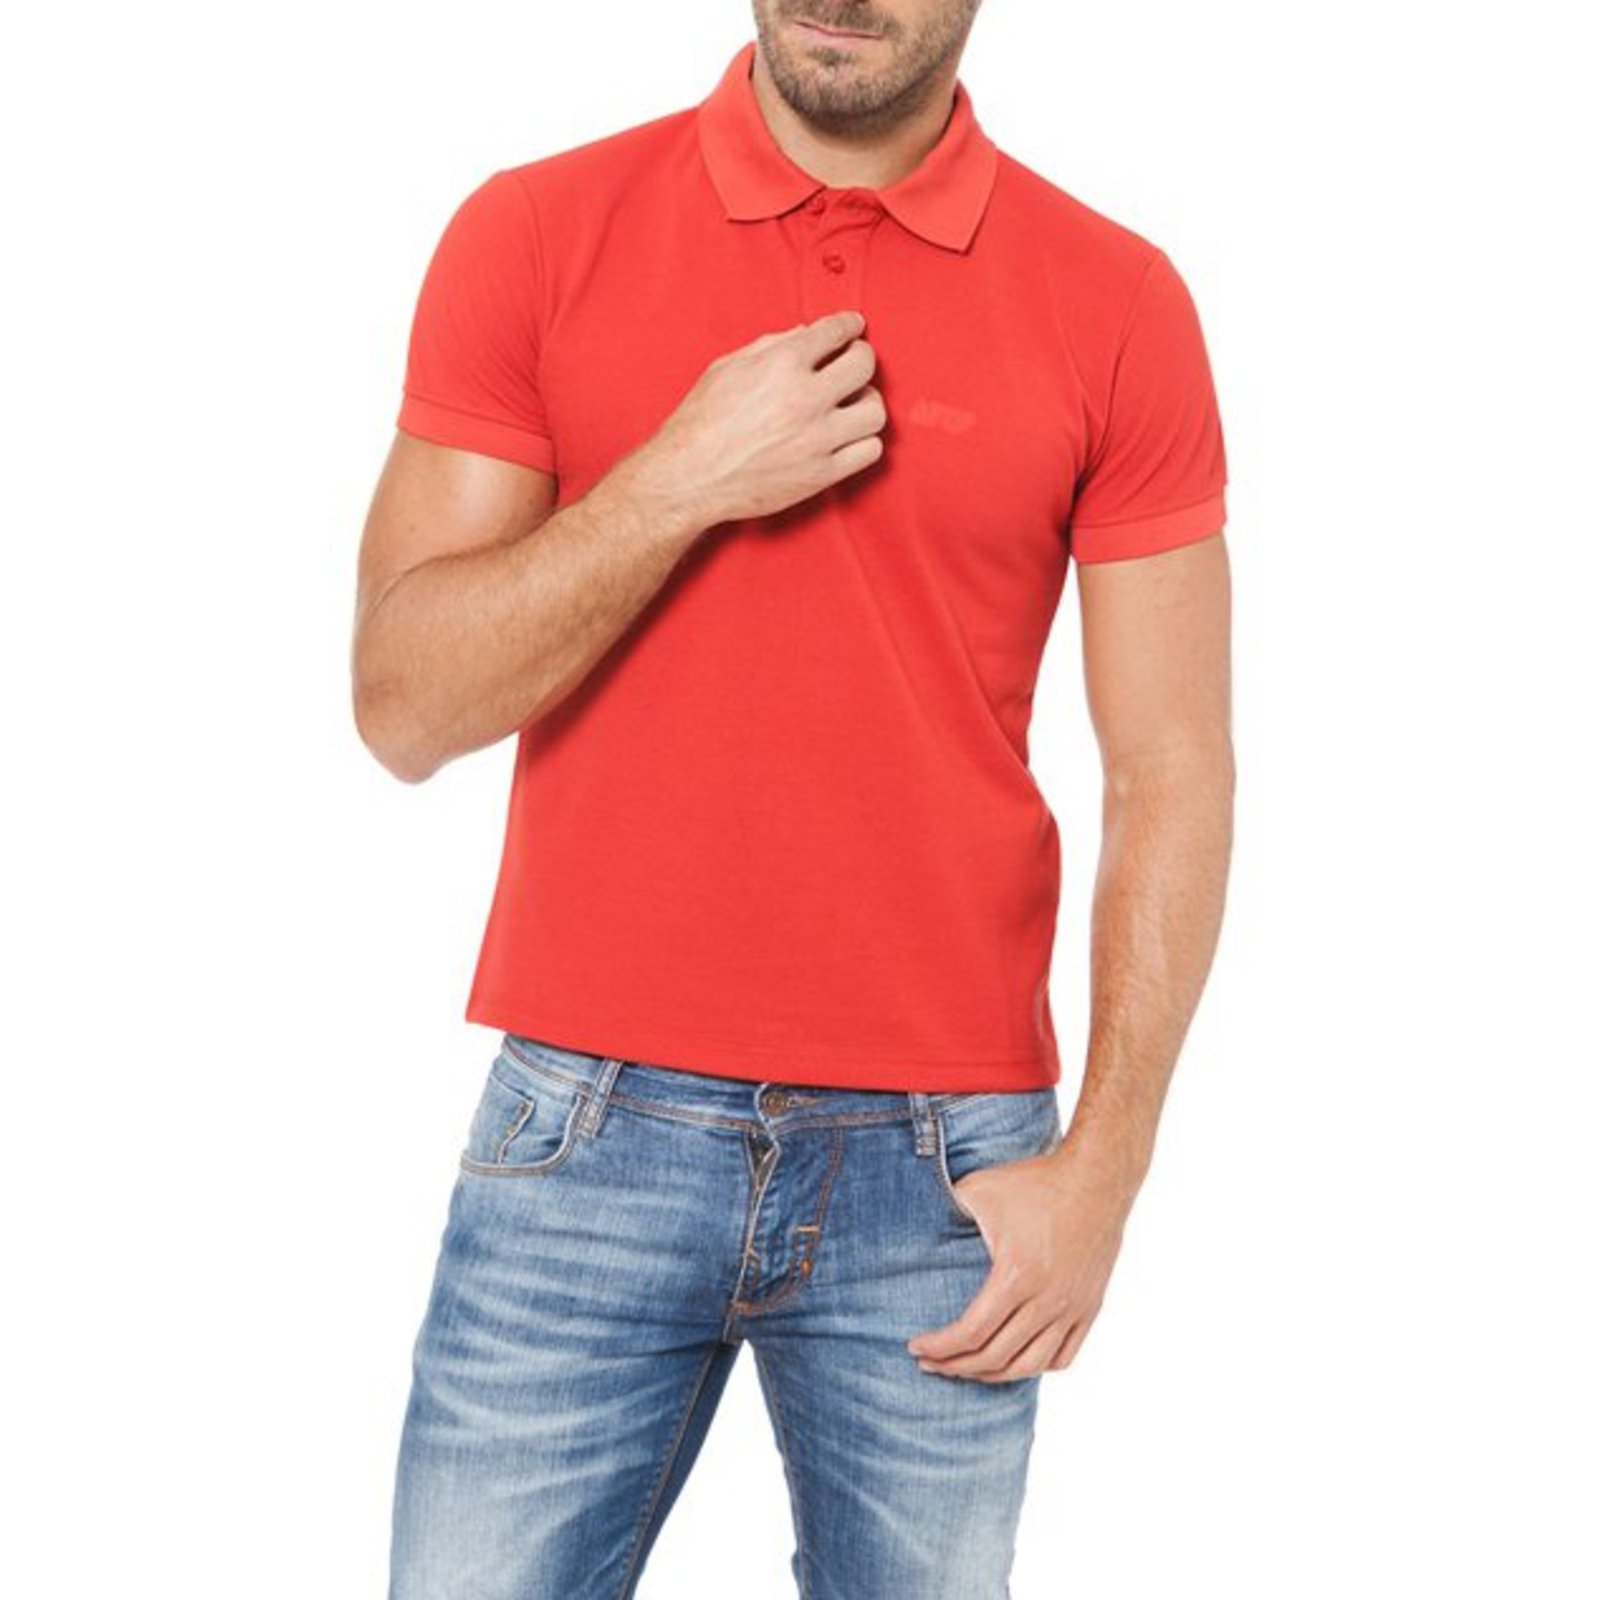 armani red polo shirt